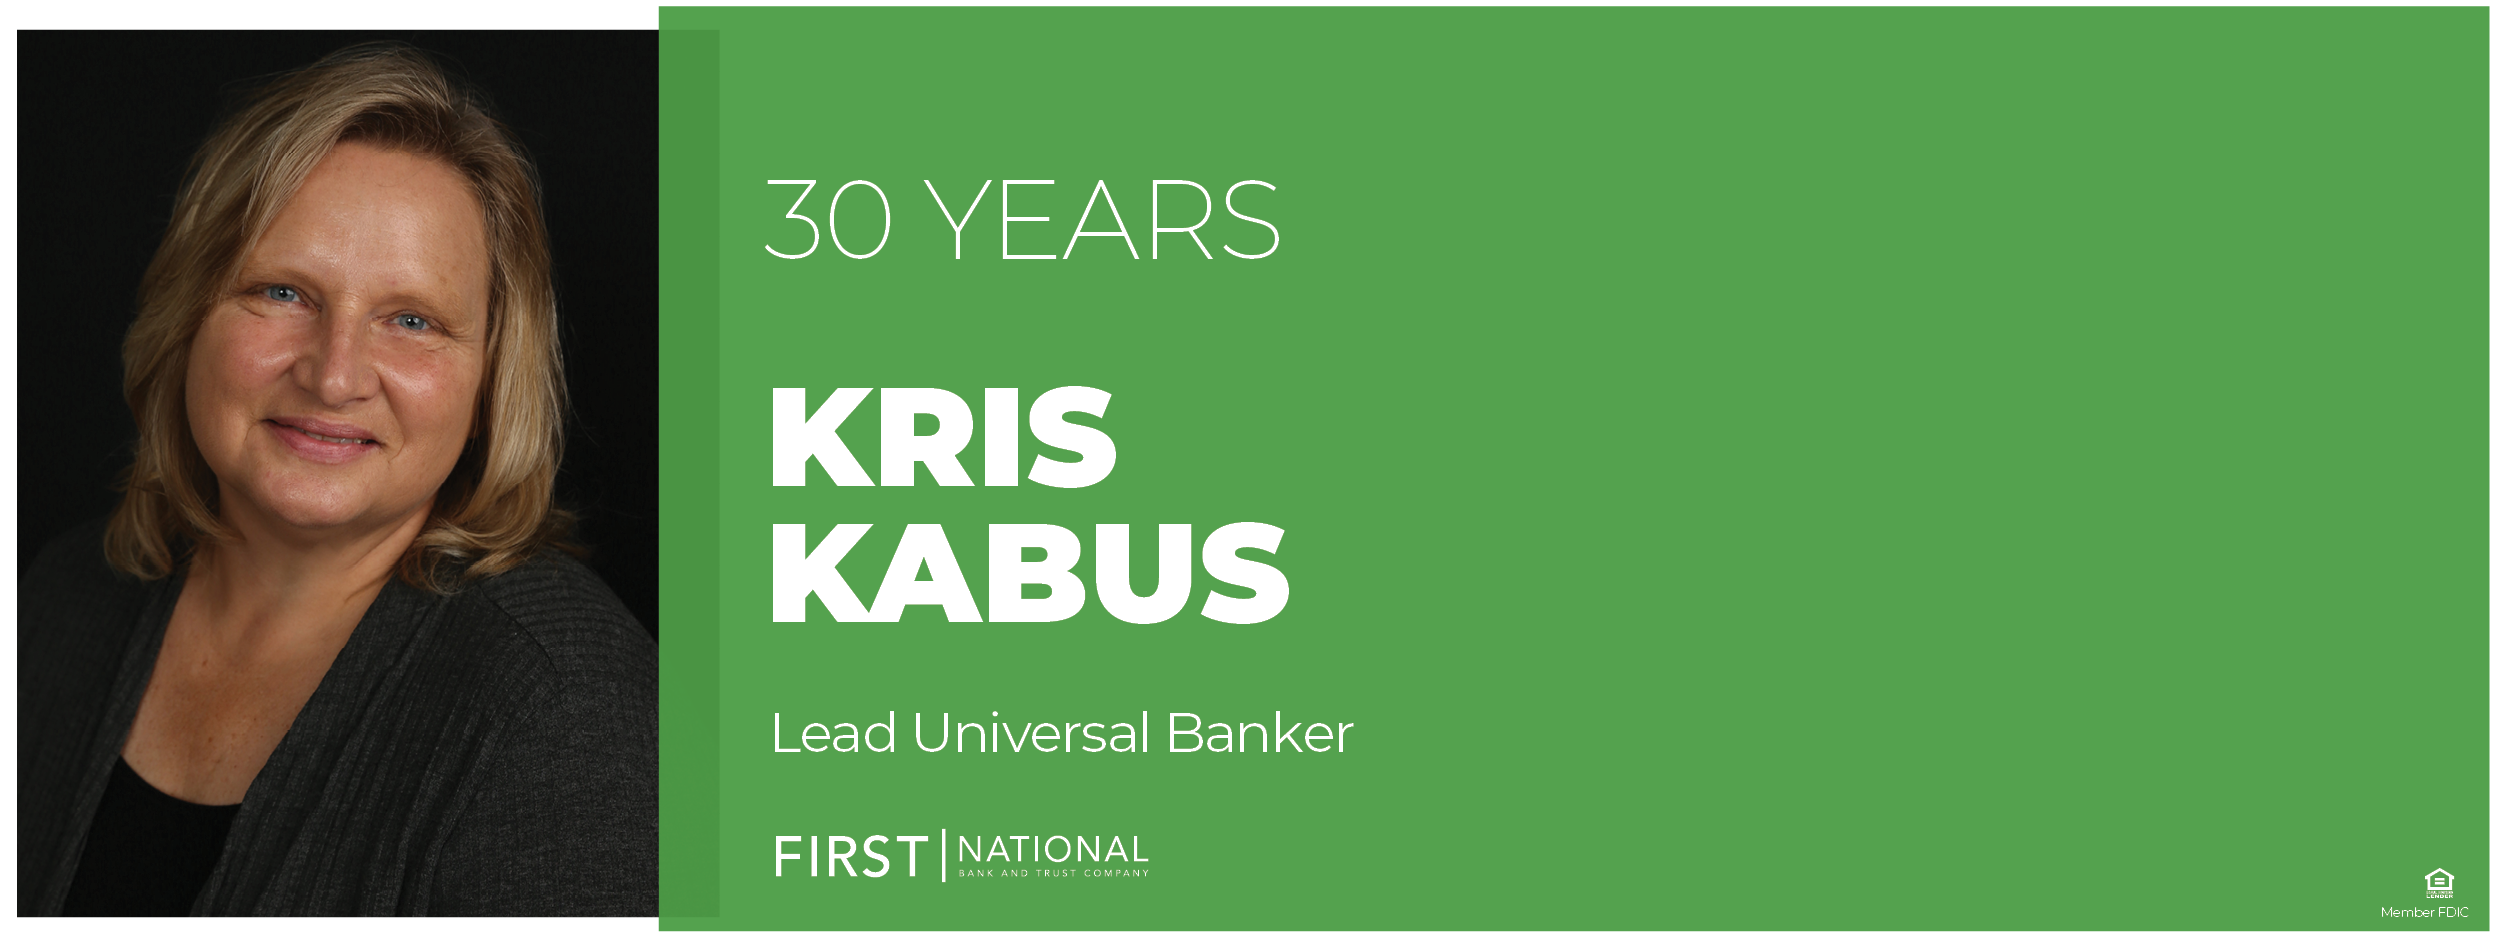 Kris Kabus 30 Years